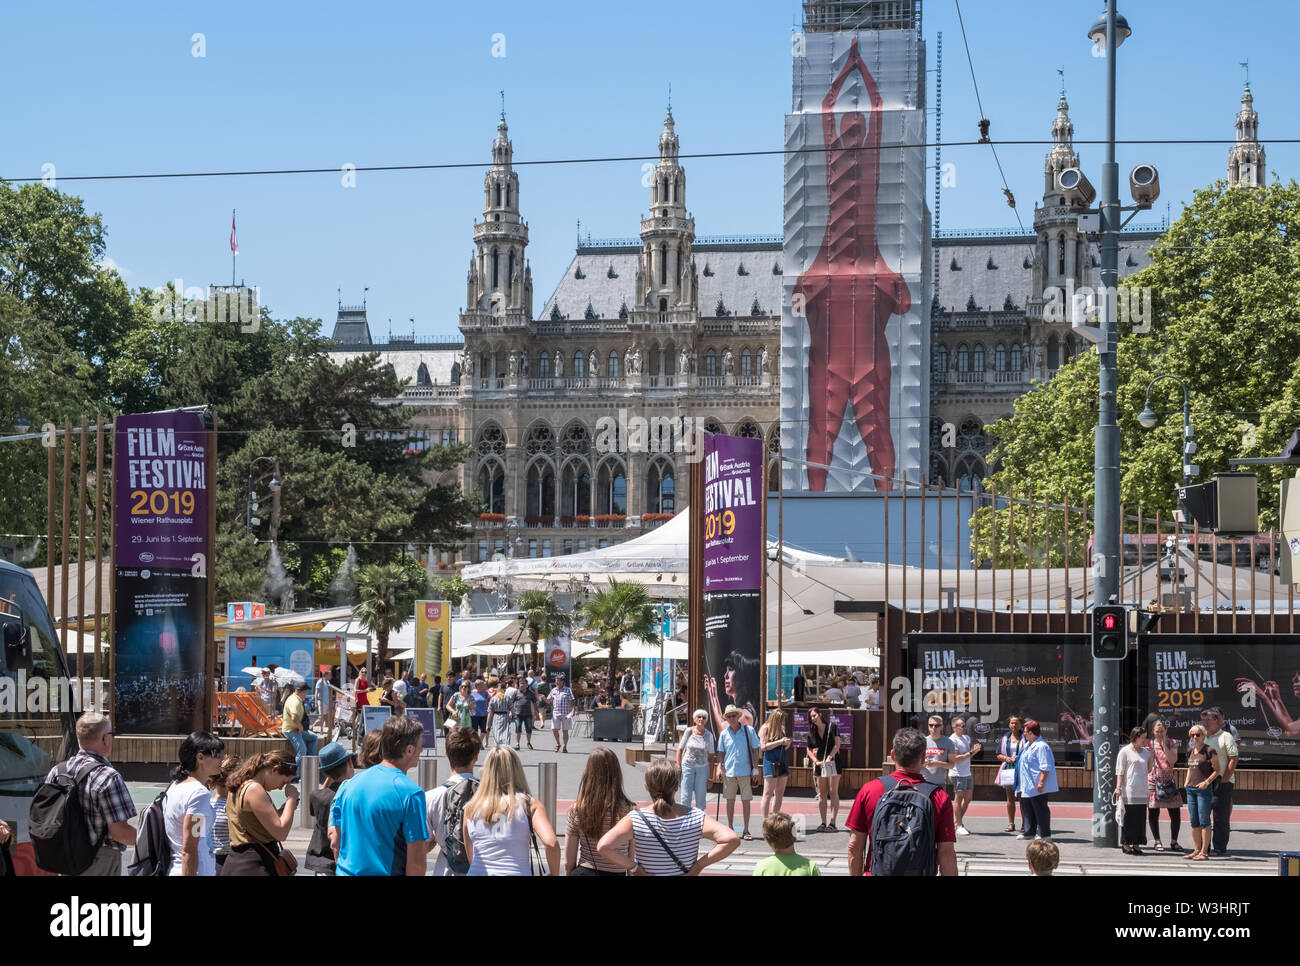 Menschenmassen versammeln sich auf der Website der Vienna Film Festival, eine kostenlose jährliche Veranstaltung auf dem Gelände der City Hall (Rathaus), Rathausplatz, Wien, Österreich, statt. Stockfoto